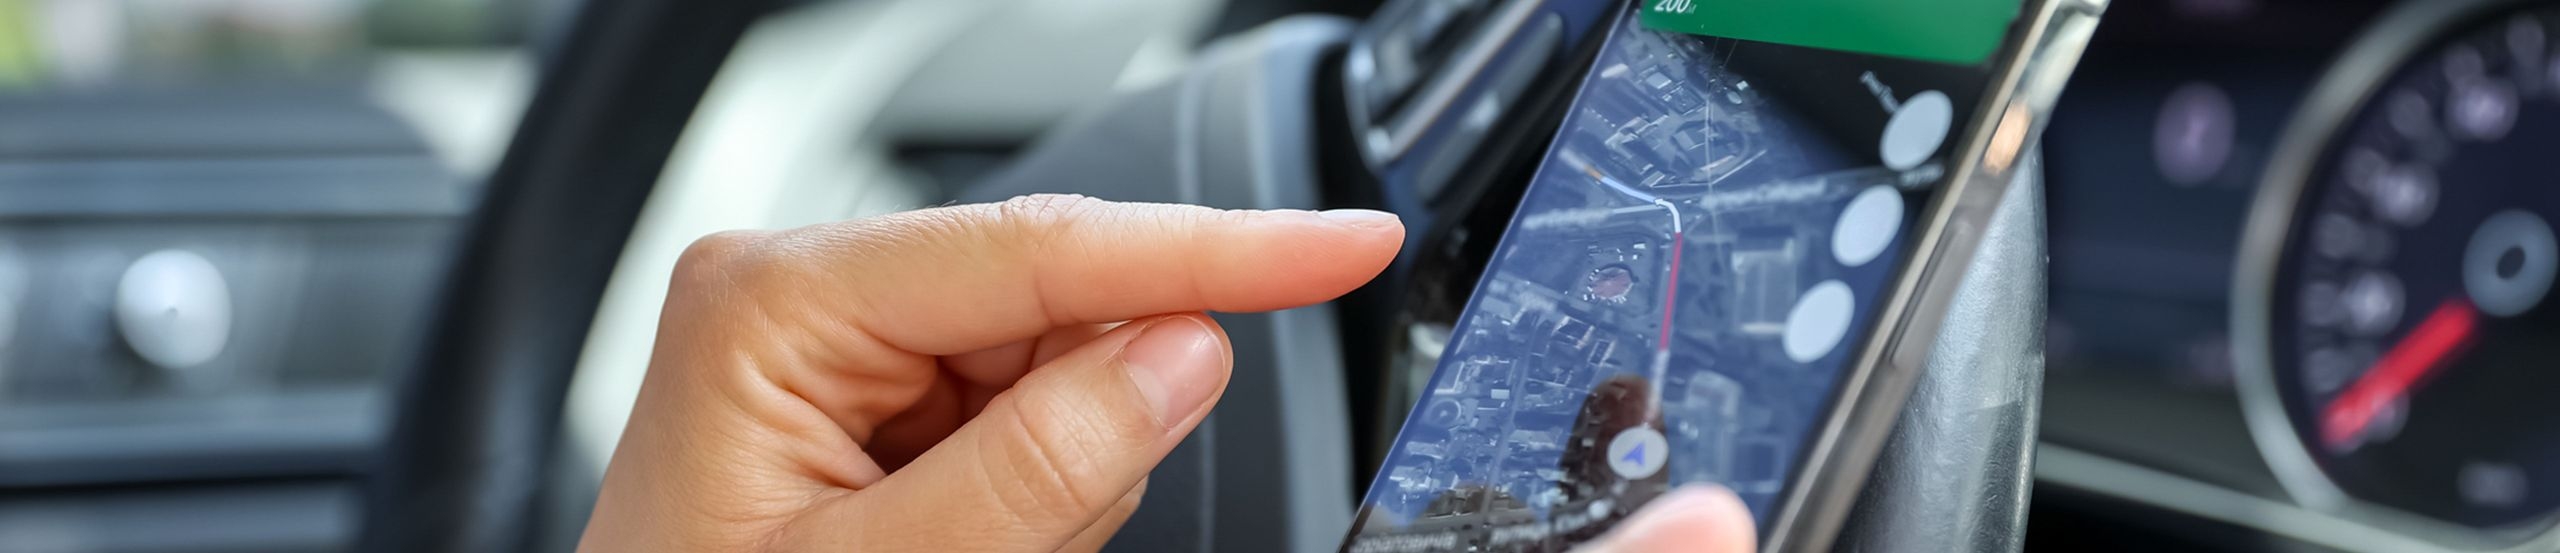 Ein Mensch sitzt in einem Auto. Seine Hand zeigt auf ein Smartphone, das er in der rechten Hand hält. 